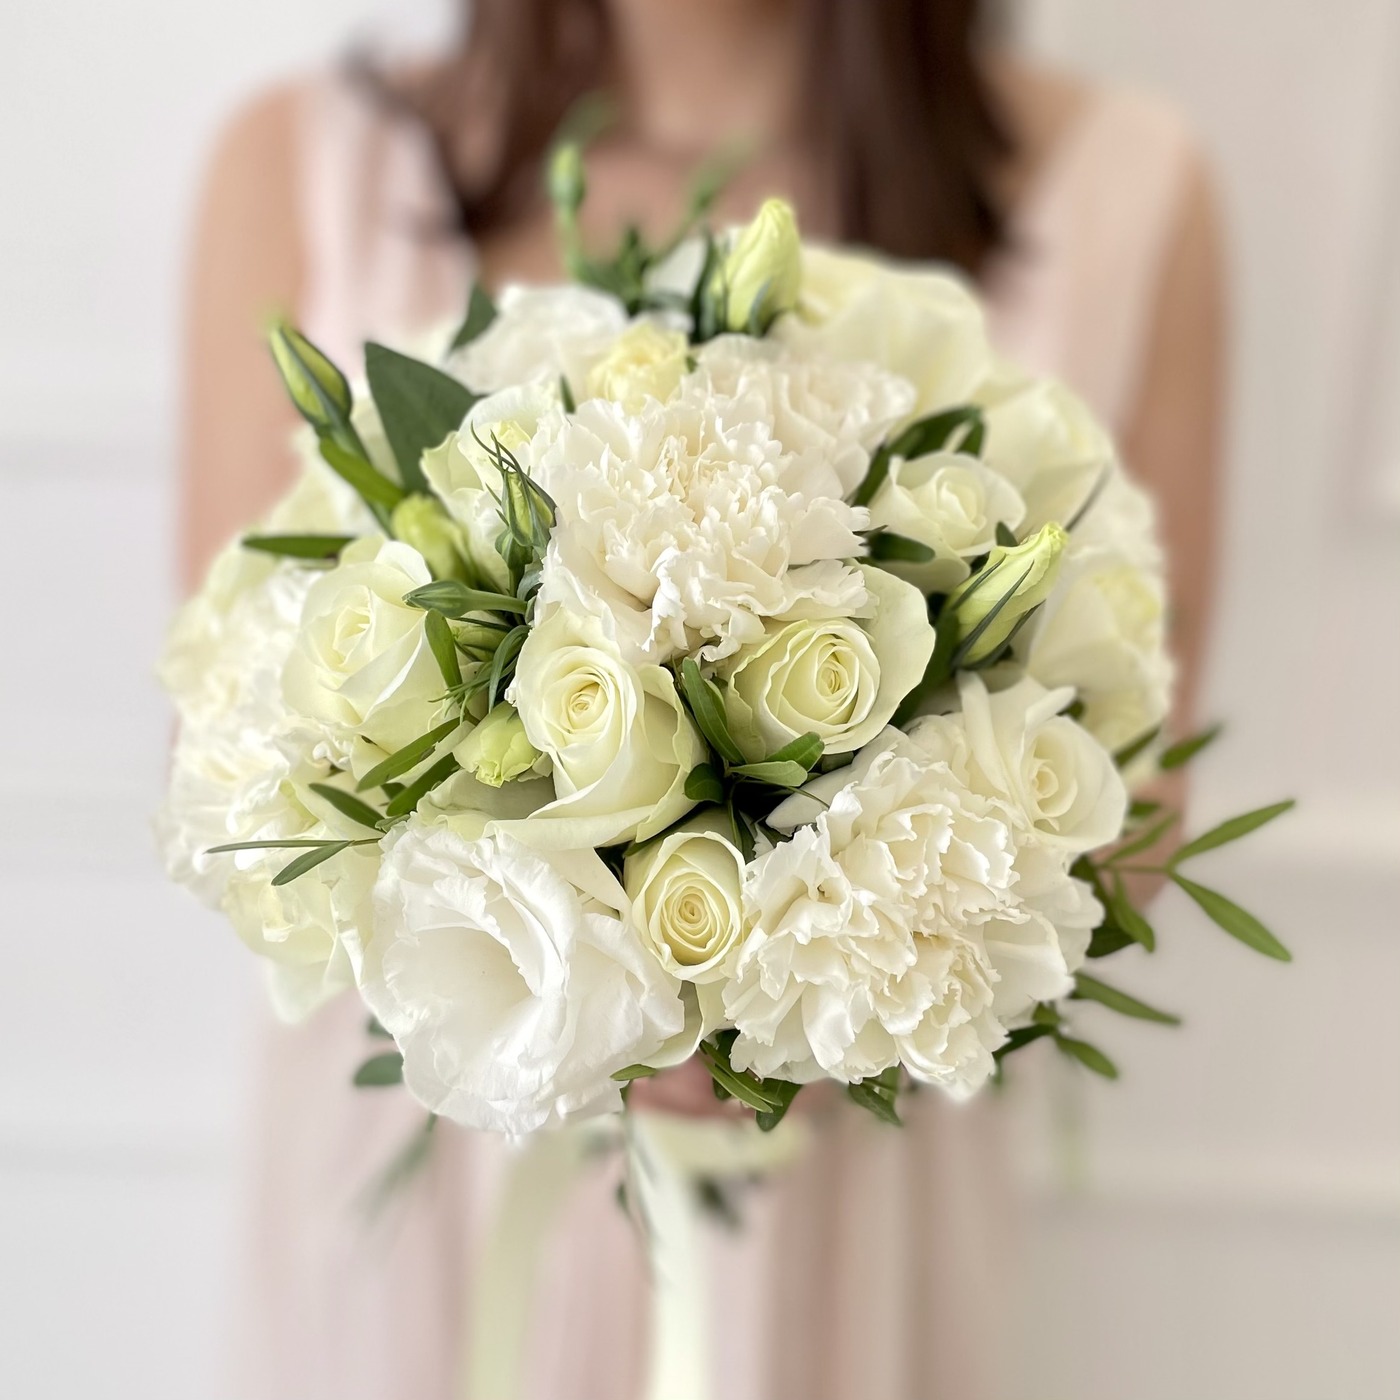 Купить букет невесты из белых роз и гвоздик до 10000 рублей с доставкой по Москве и области